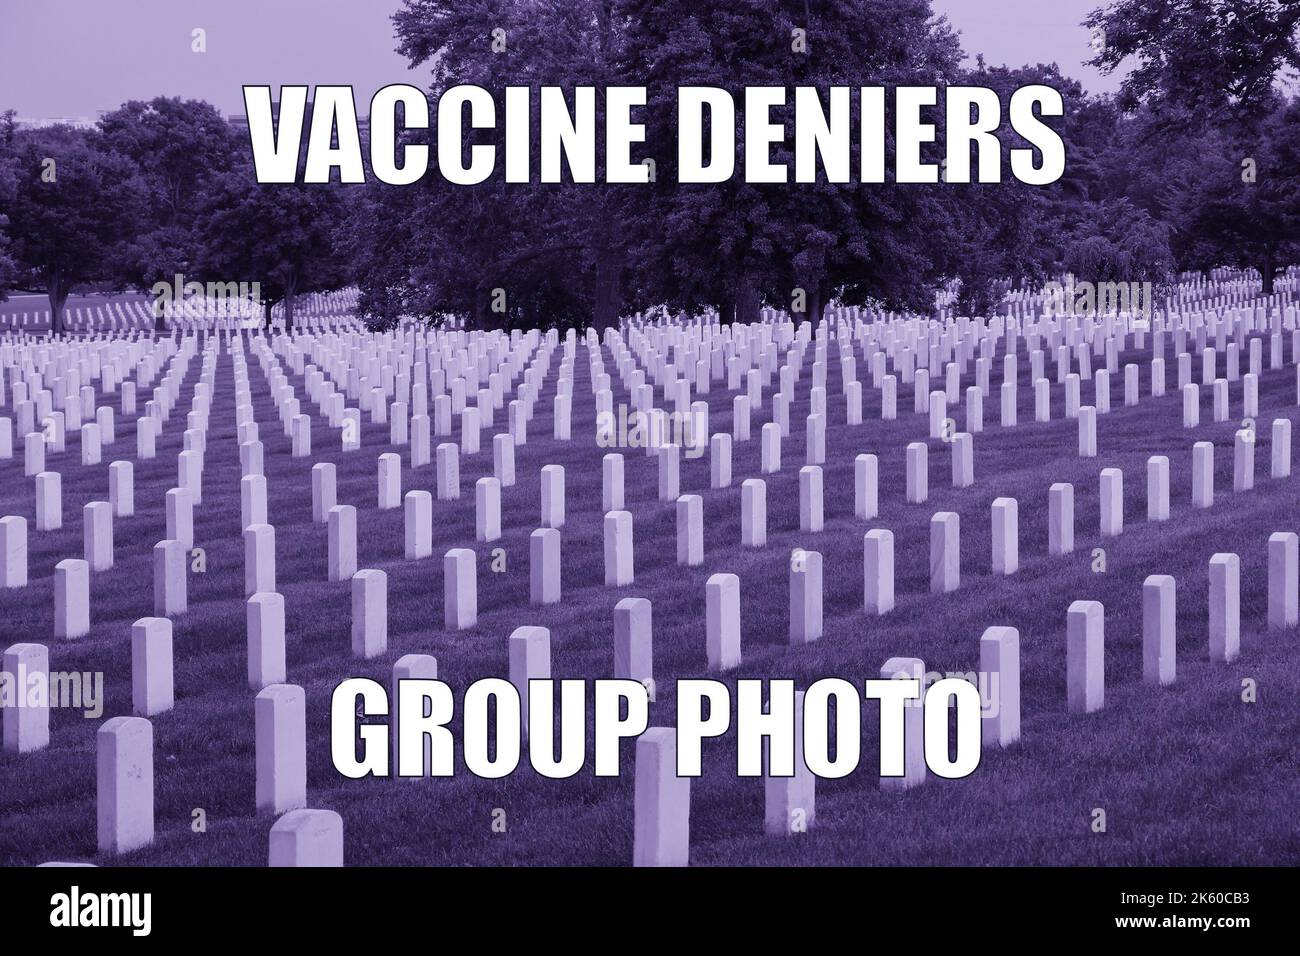 Vacuna deniers cementerio humor oscuro divertido meme para compartir medios sociales. Humor negro sobre el escepticismo de las vacunas y los teóricos de la conspiración anti-vaxxer. Foto de stock